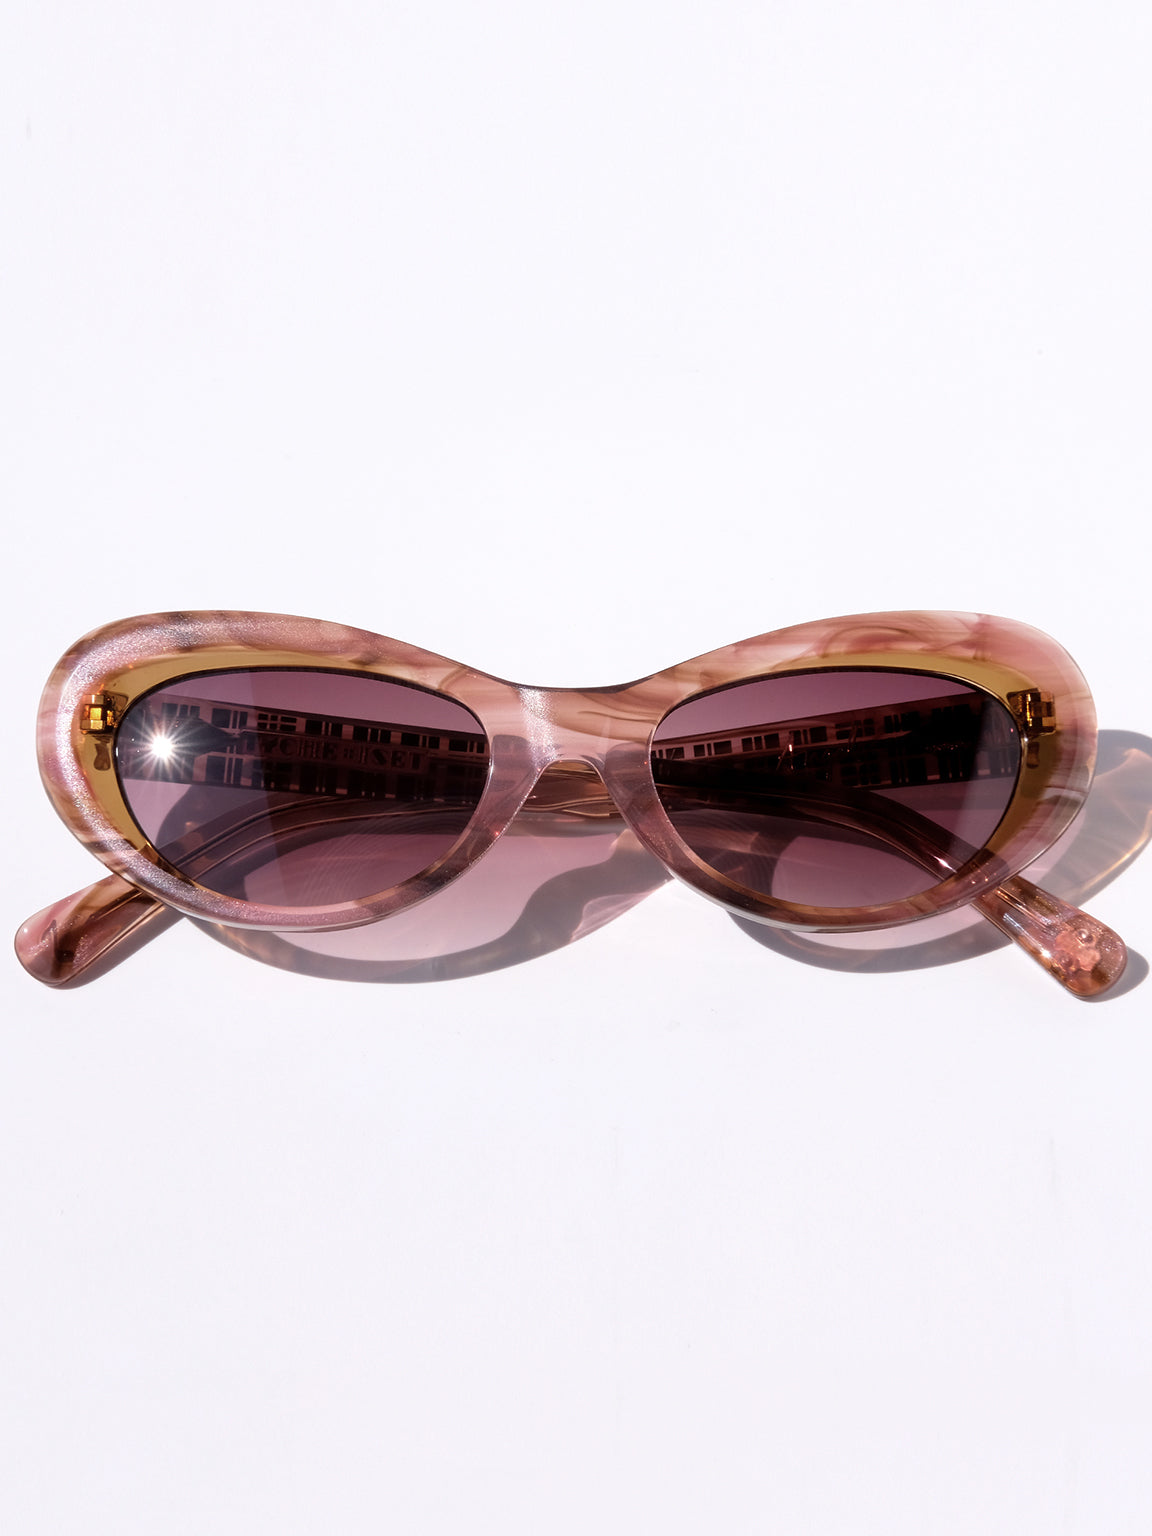 Women's Beige Cat-Eye Sunglasses